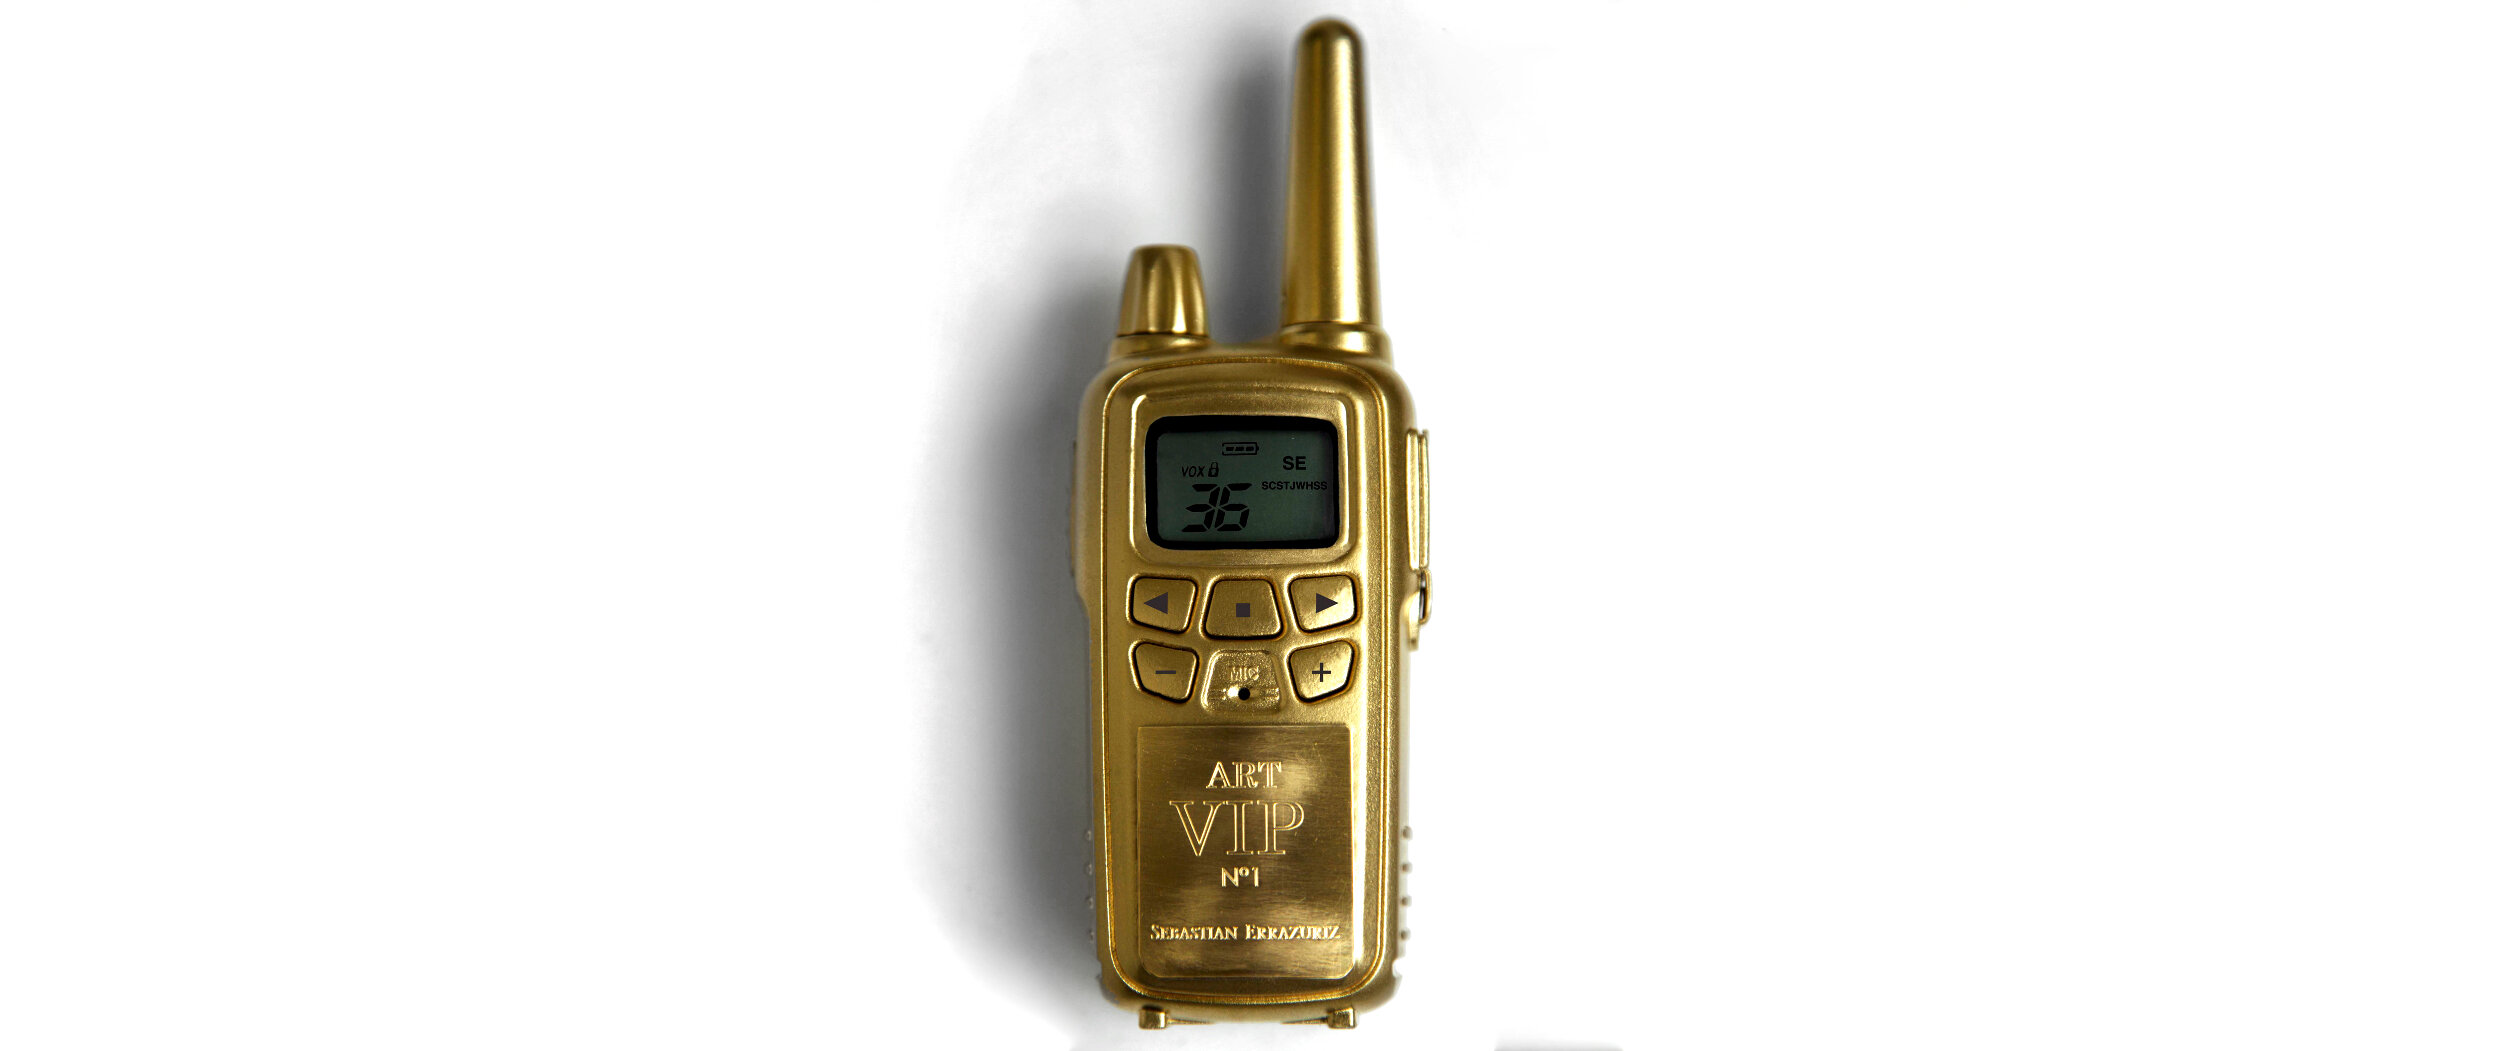 vip walkie talkie wide.jpg